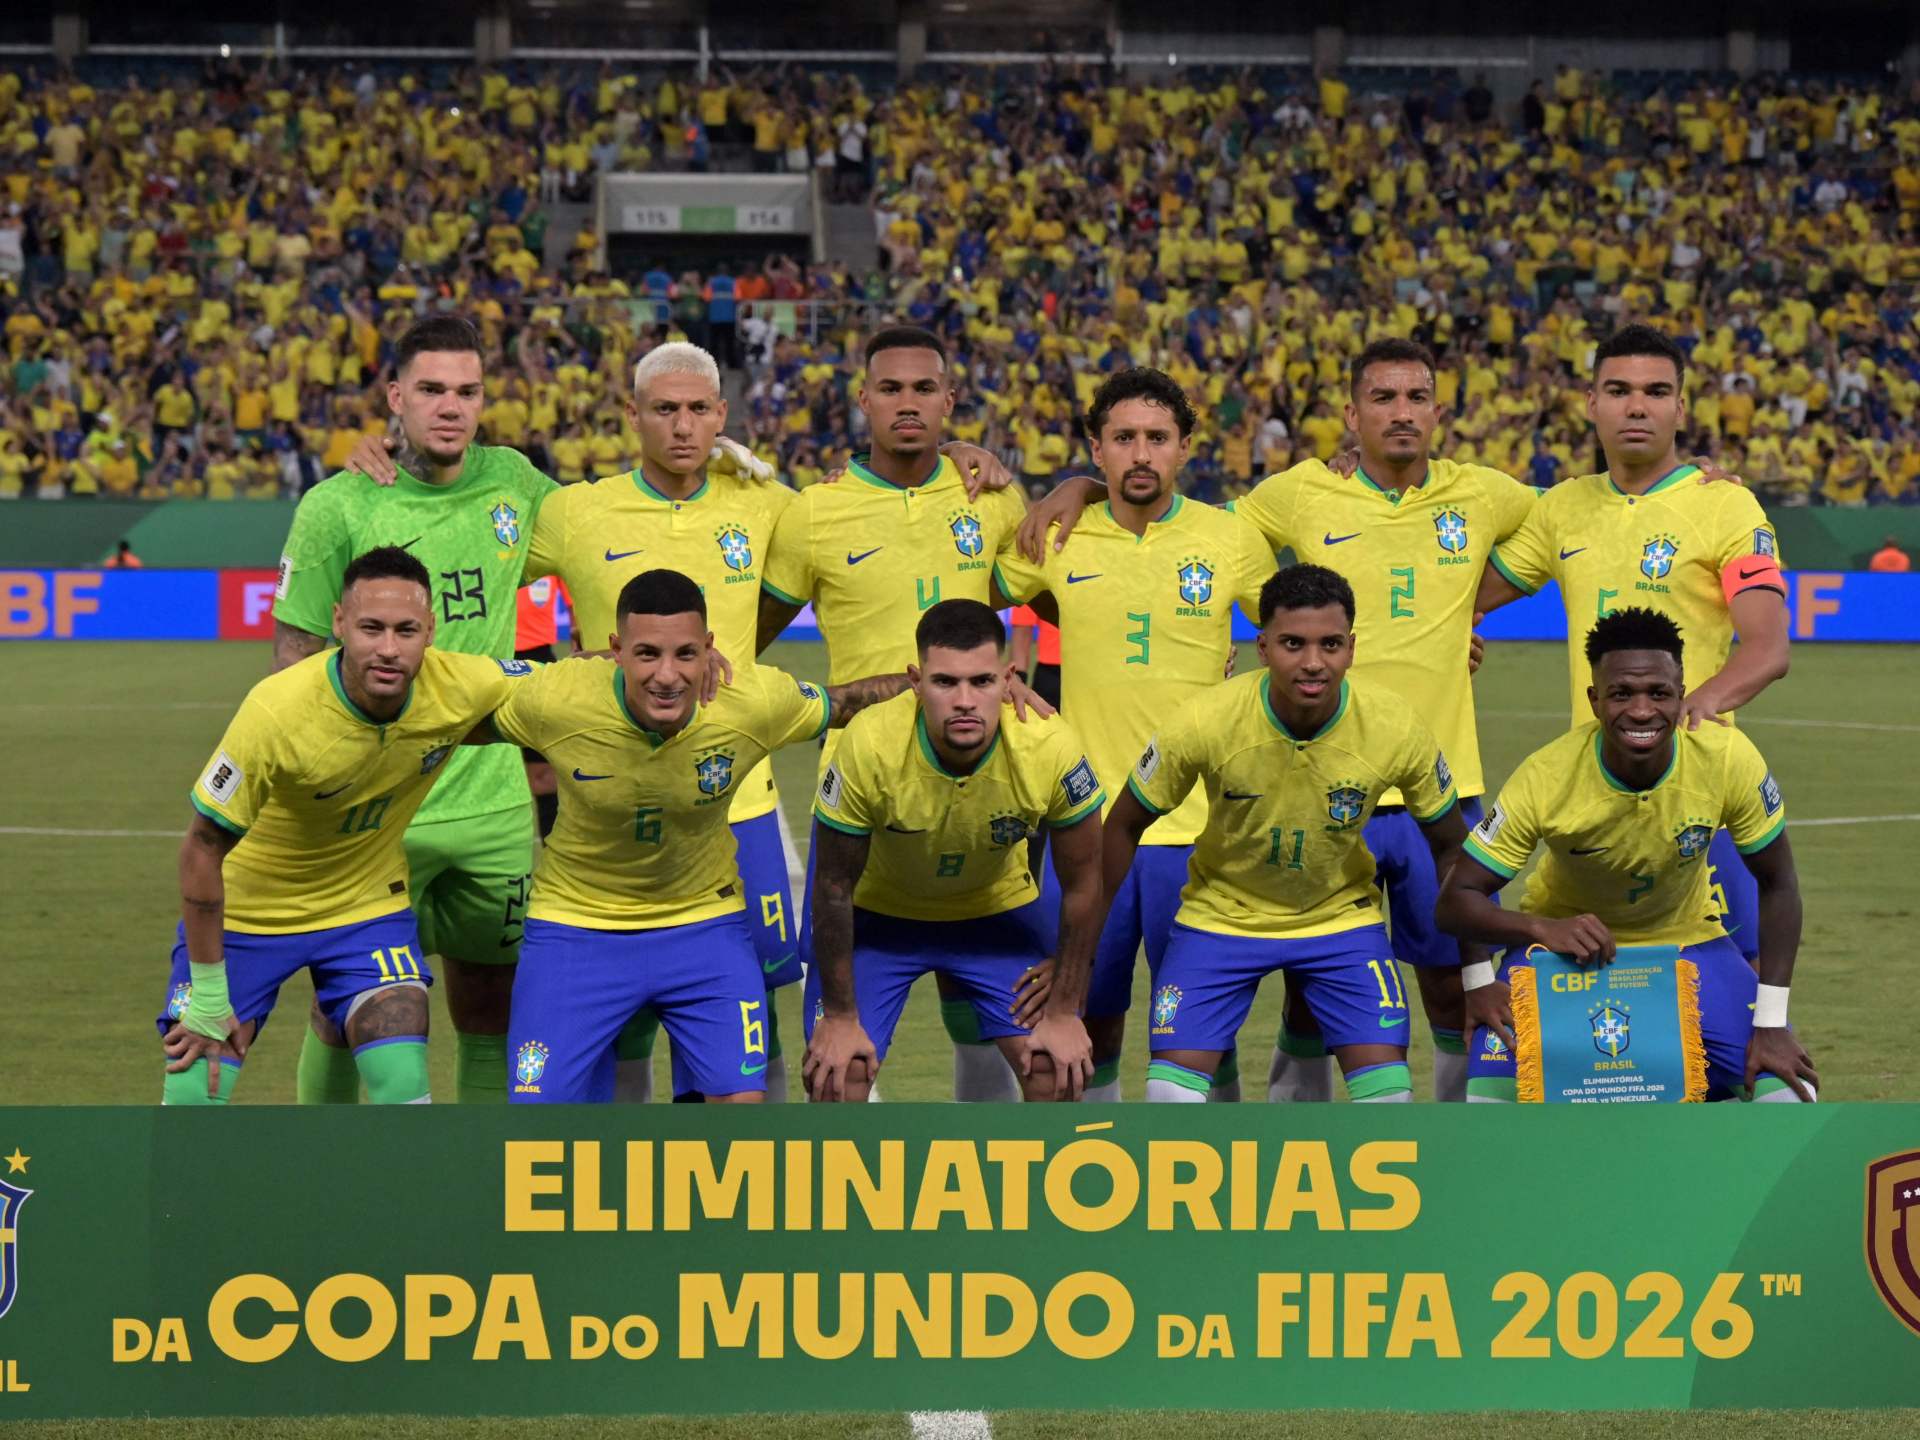 الفيفا يهدد باستبعاد البرازيل من جميع المسابقات الدولية | رياضة – البوكس نيوز